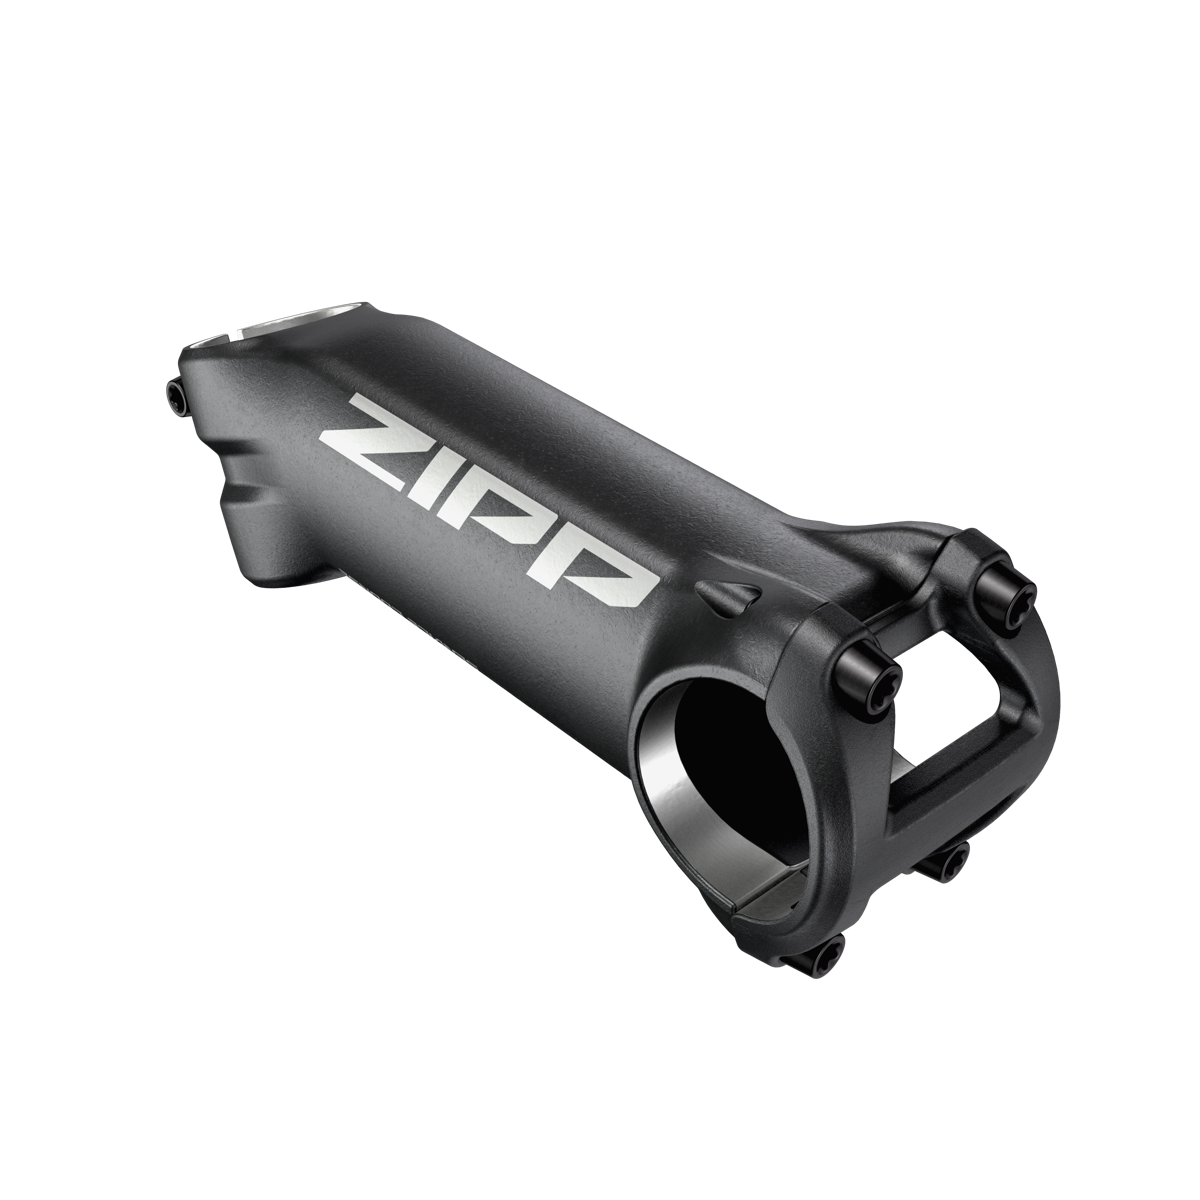 速连推出新款ZIPP把组系列及全新集成式支架